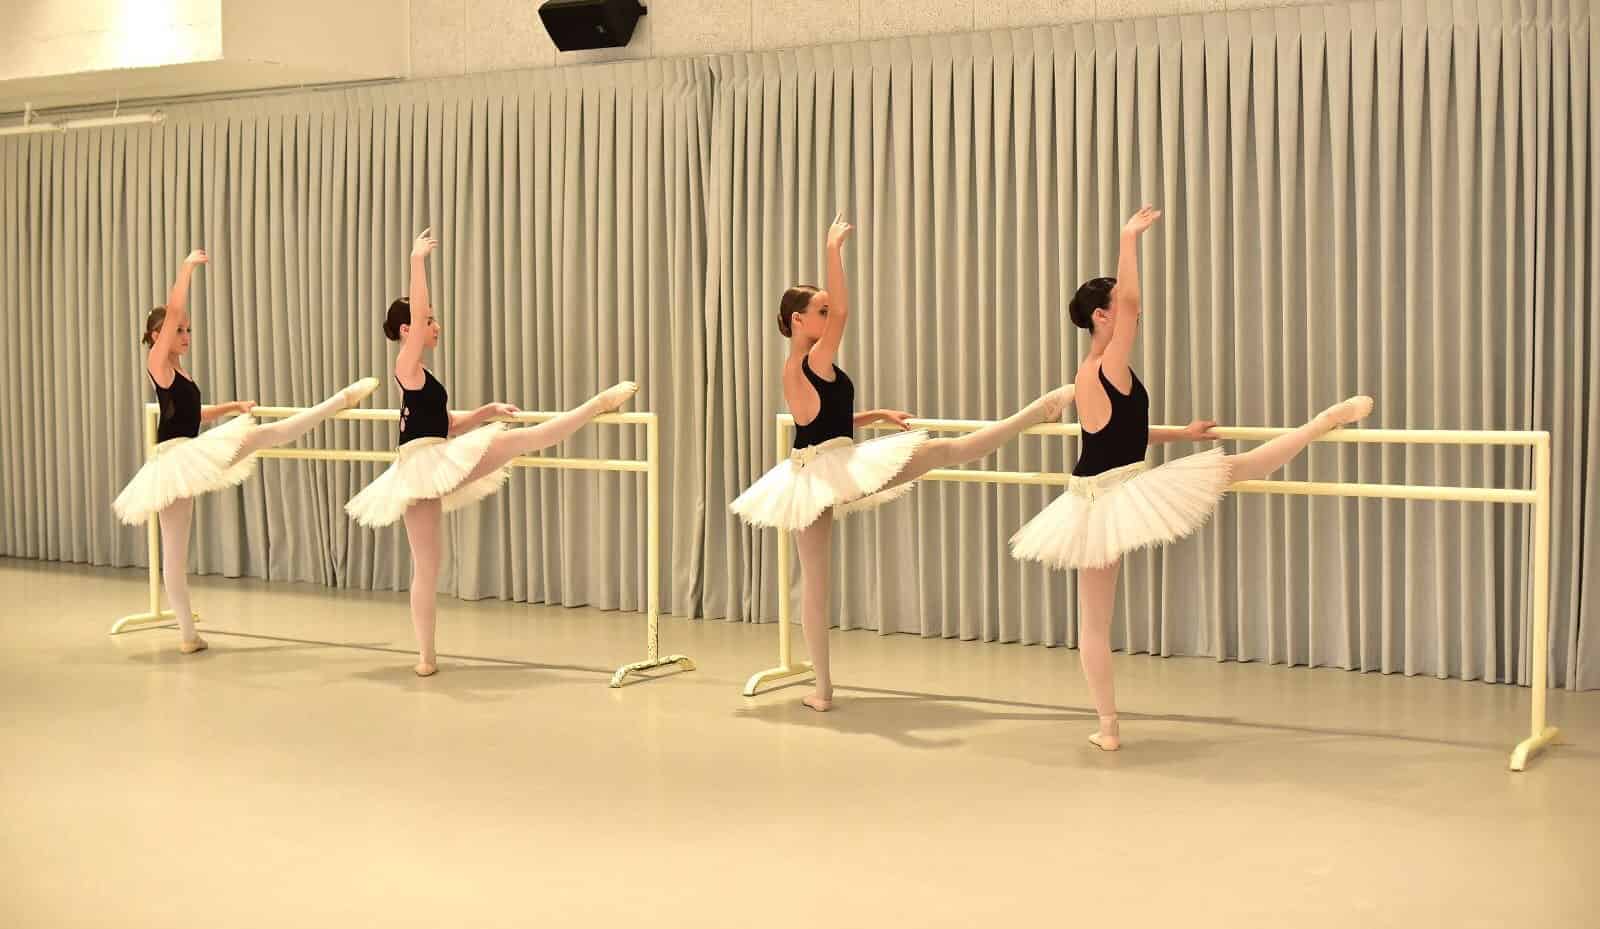 רקדניות בלרינות על בר נייד לבלט ברים ניידים של מג'יק פלור ברים ניידים איכותיים ויציבים.